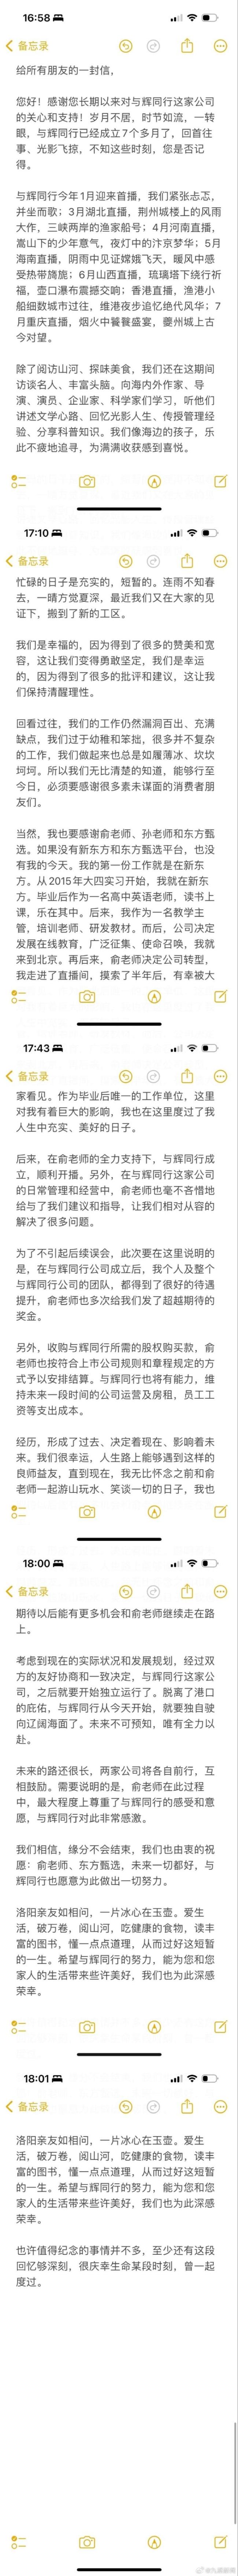 董宇辉回应离职：很庆幸曾一起度过 双方的友好协商和一致决定